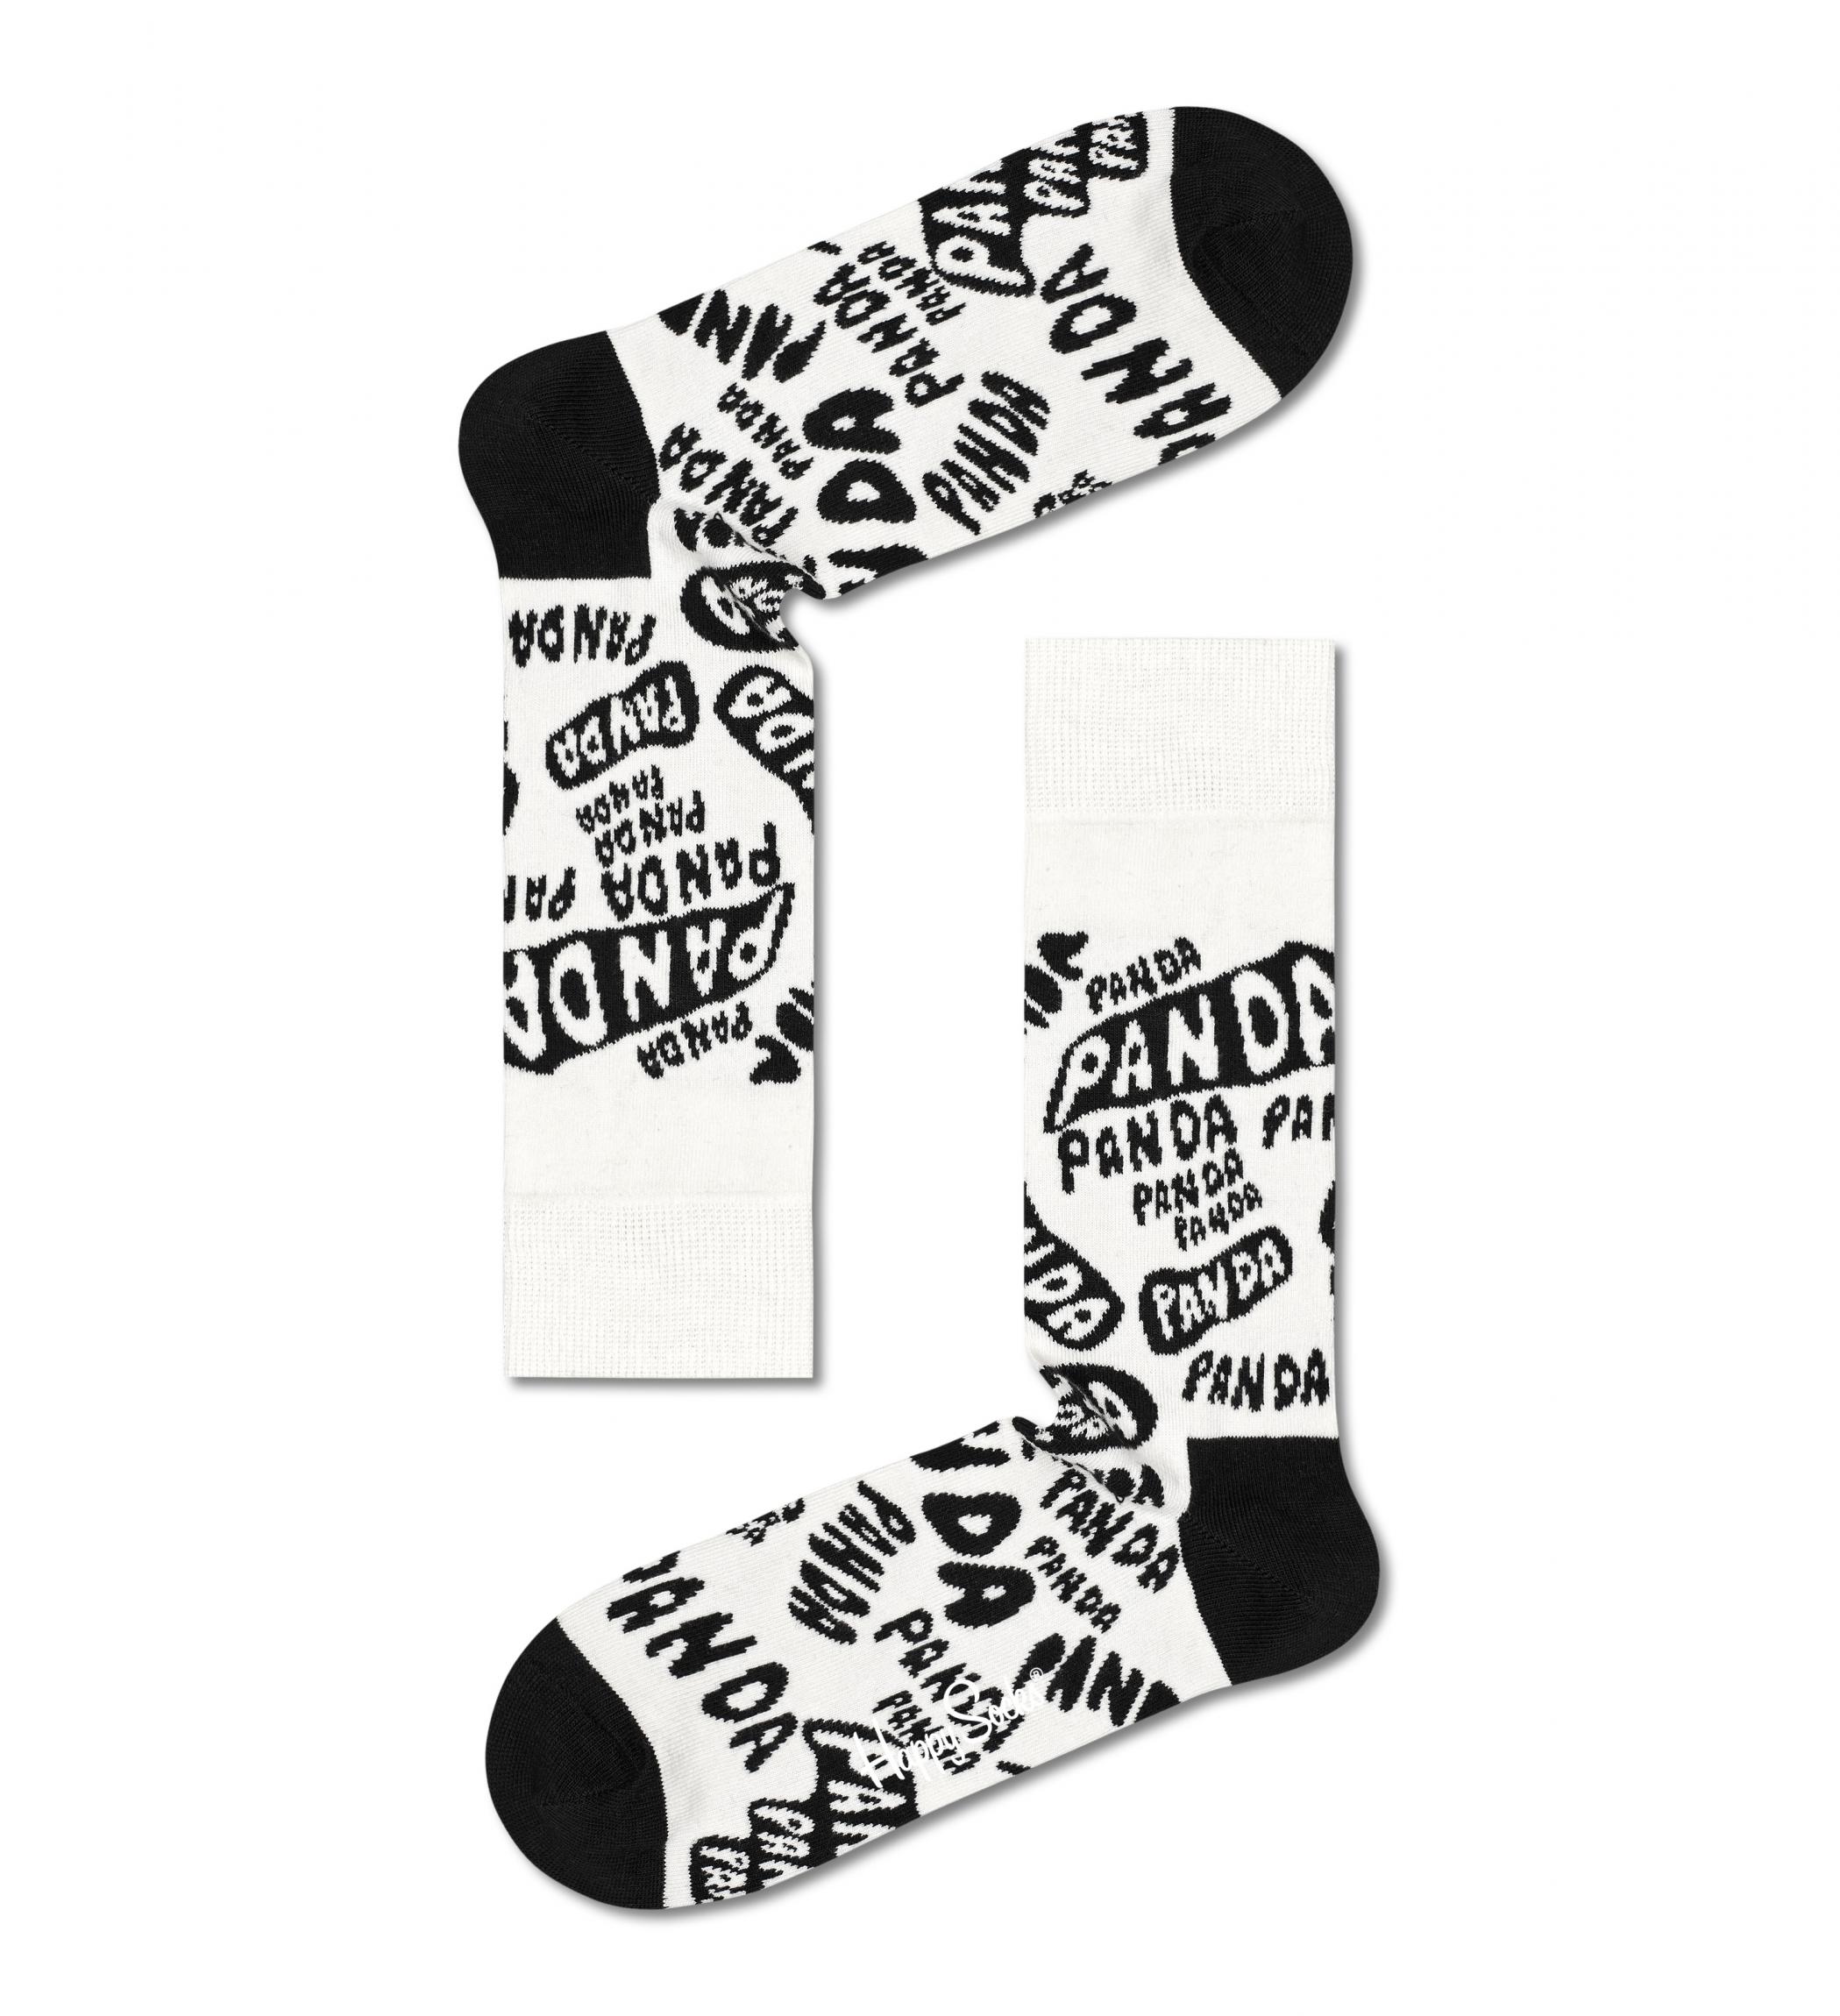 Černobílé ponožky Happy Socks x WWF, vzor Panda - Panda - Panda